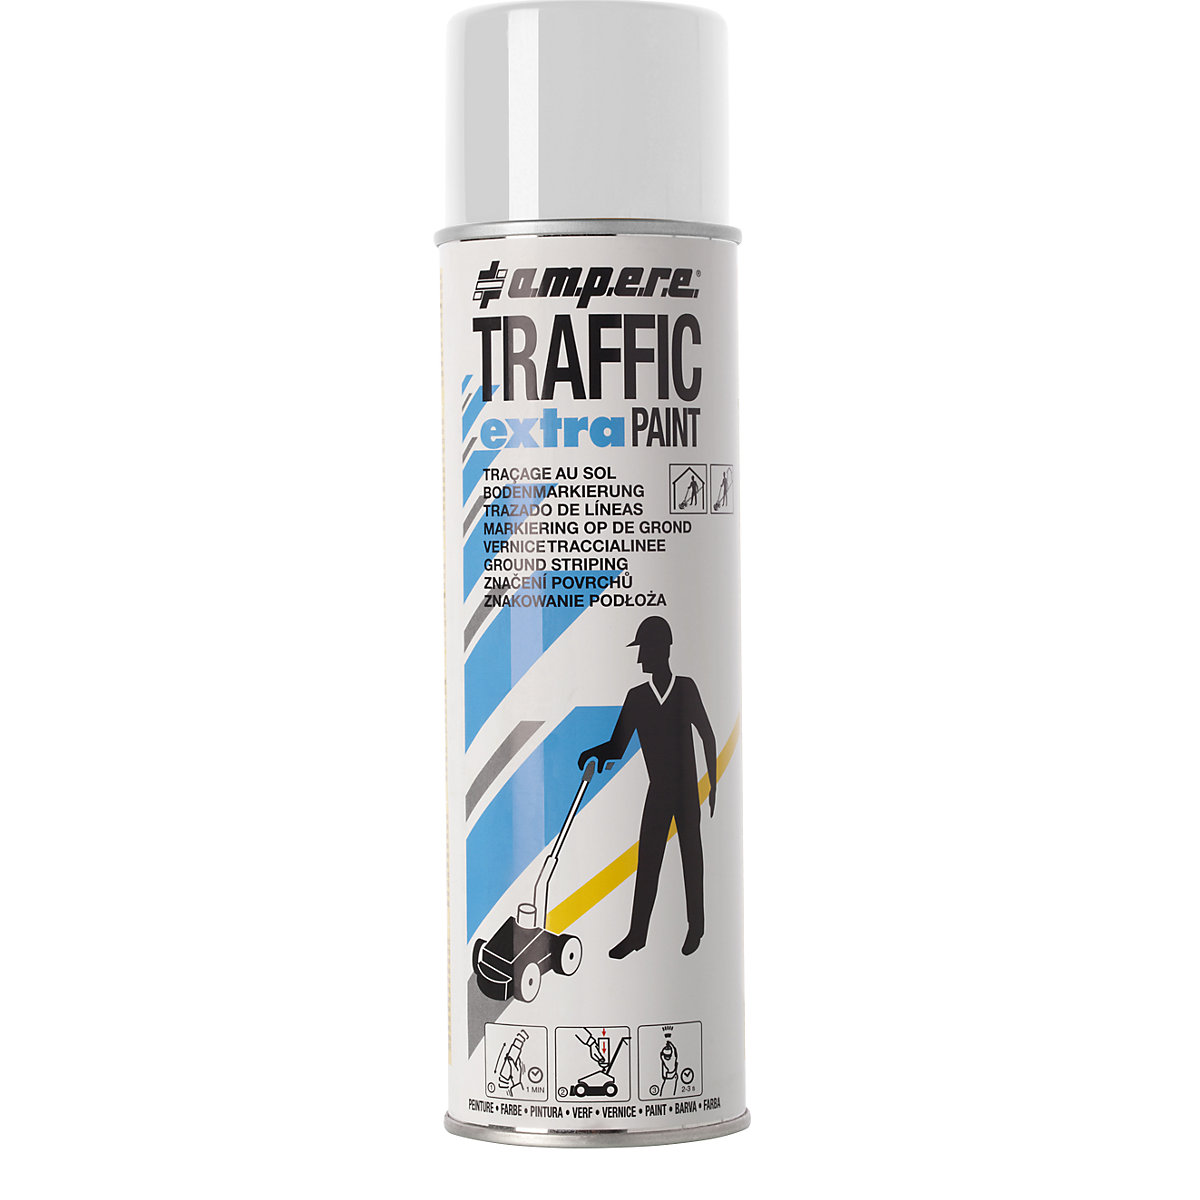 Peinture de marquage Traffic extra Paint® pour fortes contraintes - Ampere